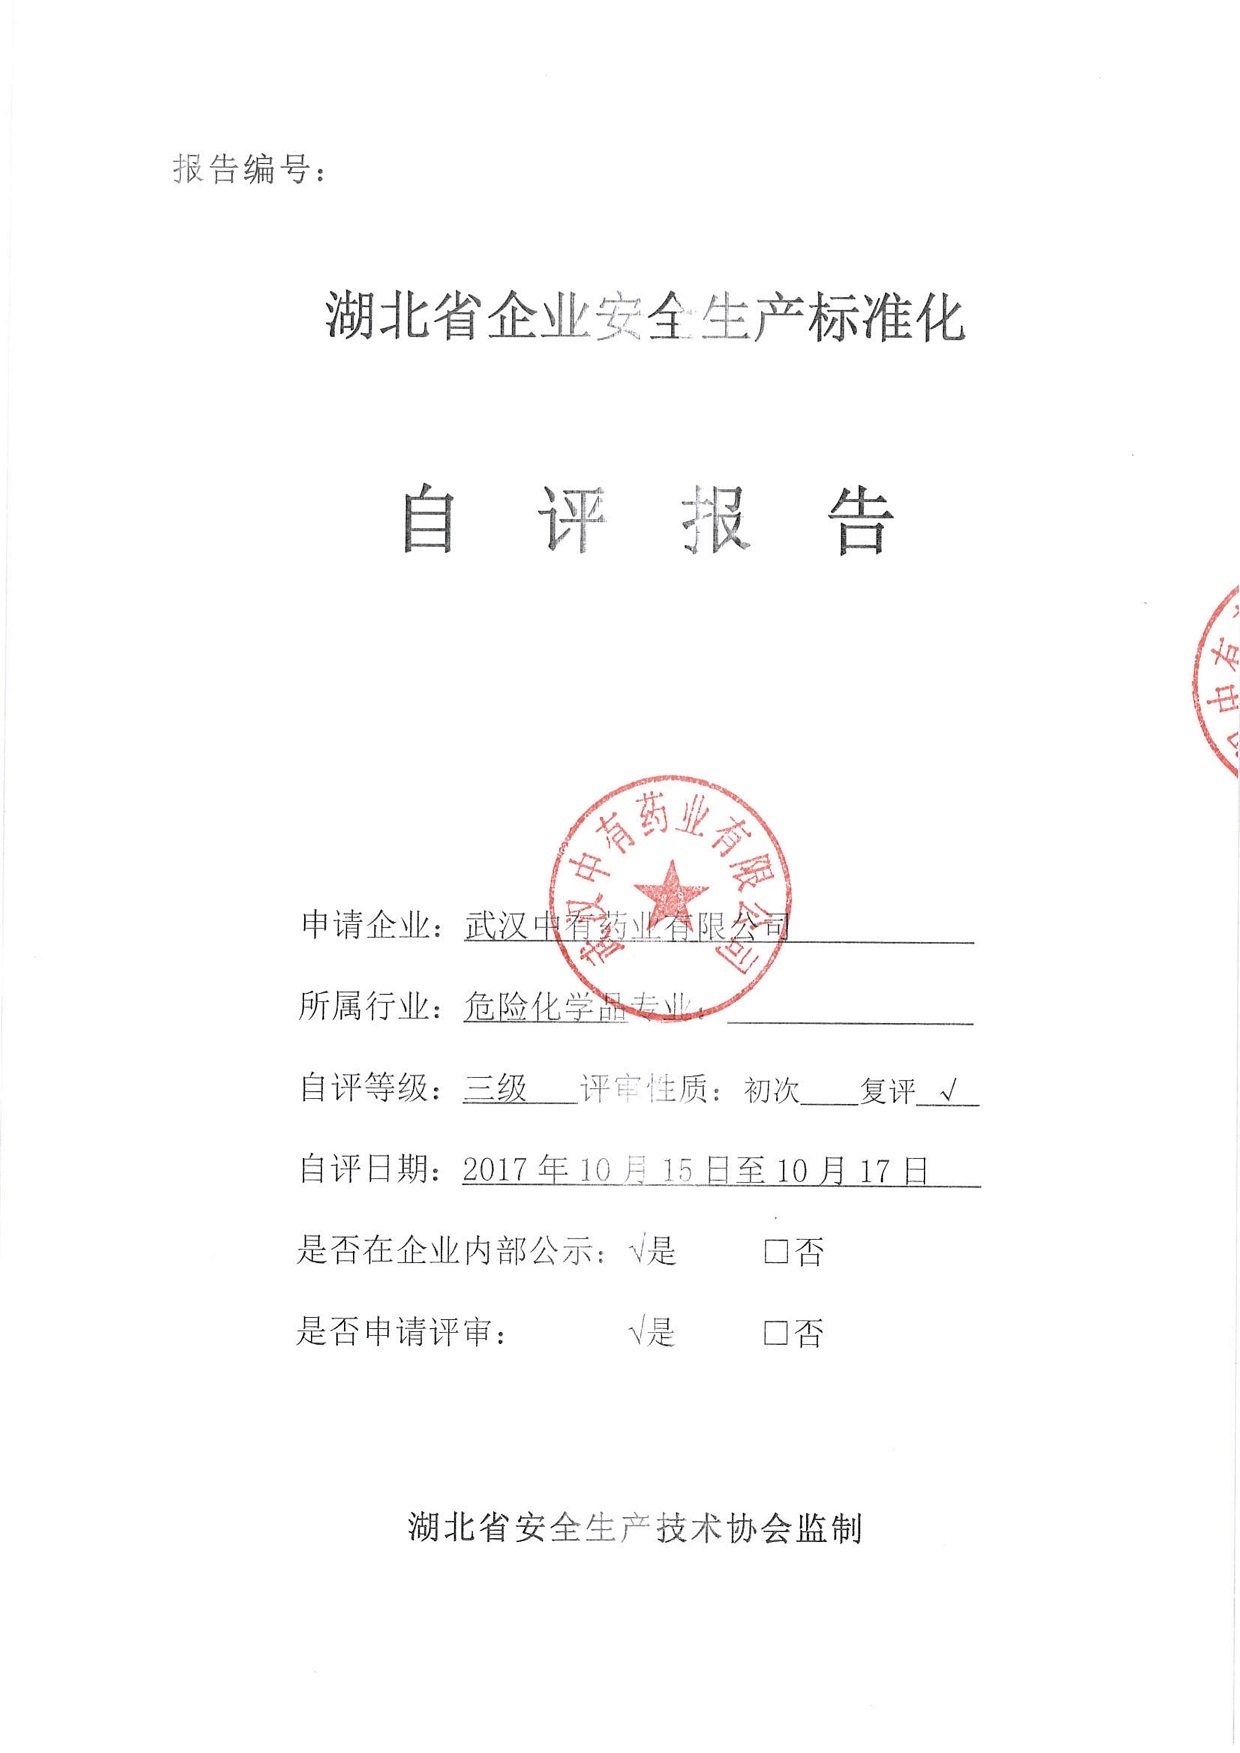 武汉中有药业有限公司安全生产标准化自评报告